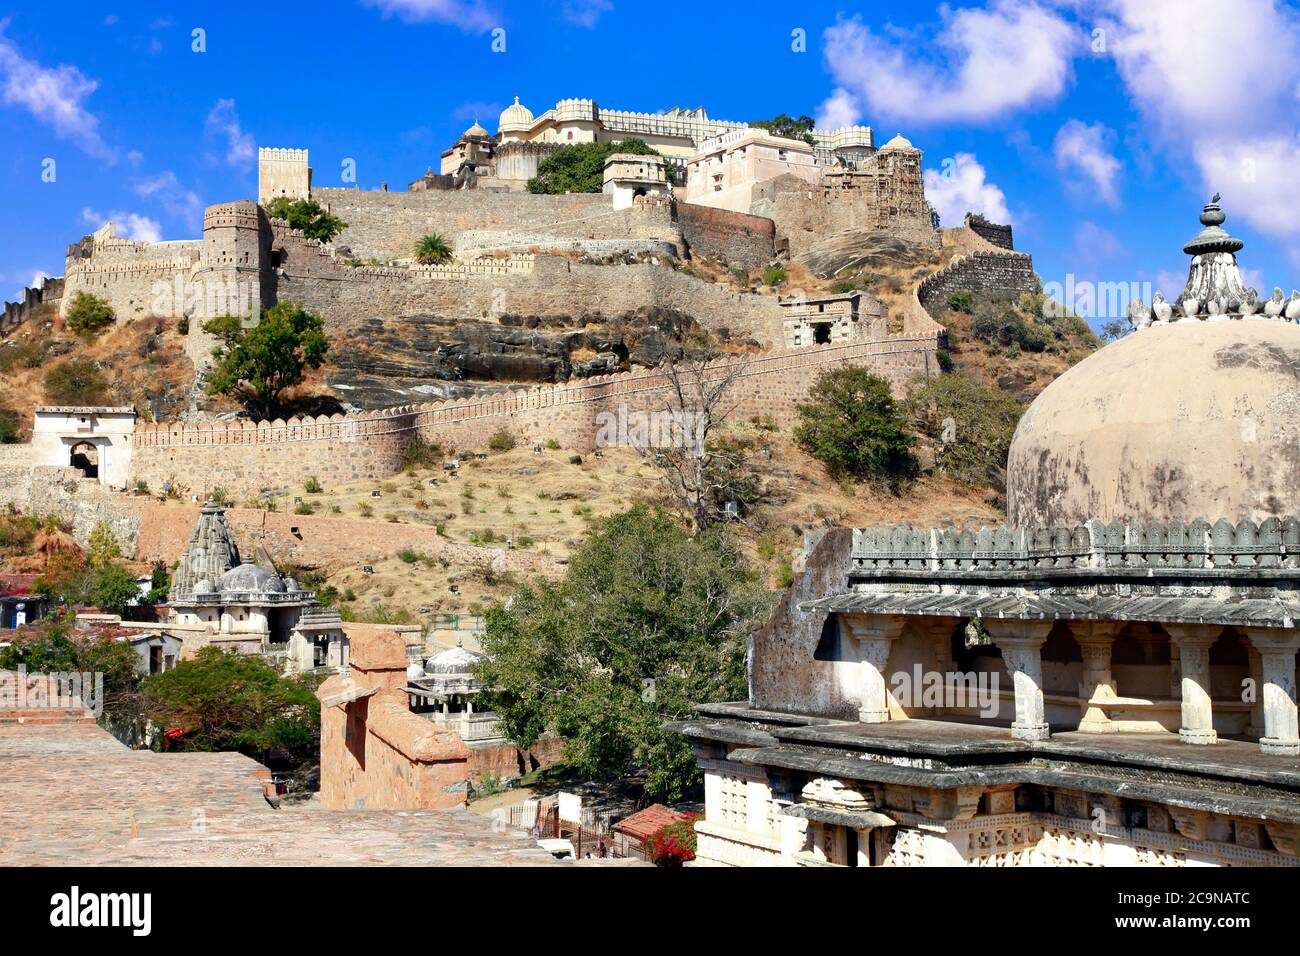 Château et murs fortifiés du fort de Kumbhalgarh dans l'État du Rajasthan. Inde Banque D'Images